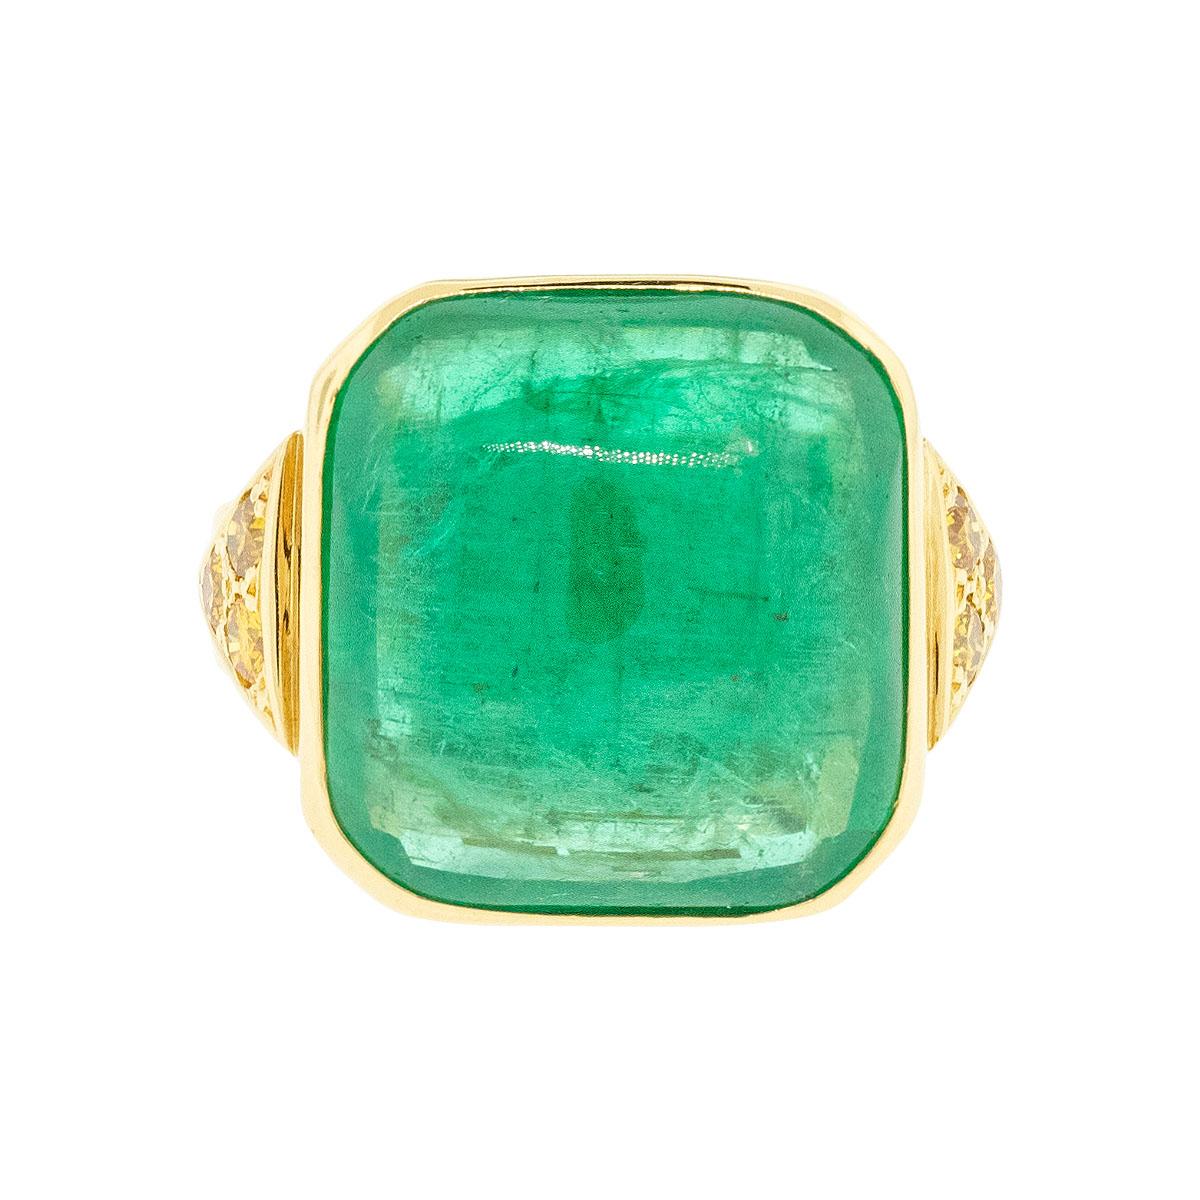 18 Karat Gelbgold Vintage Smaragd Cabochon-Ring mit Smaragd

Wenn es um Schmuck geht, haben Vintage-Stücke einen einzigartigen Charme und eine Geschichte, die moderne Kreationen einfach nicht wiedergeben können. Der 18k Gelbgold Vintage Emerald